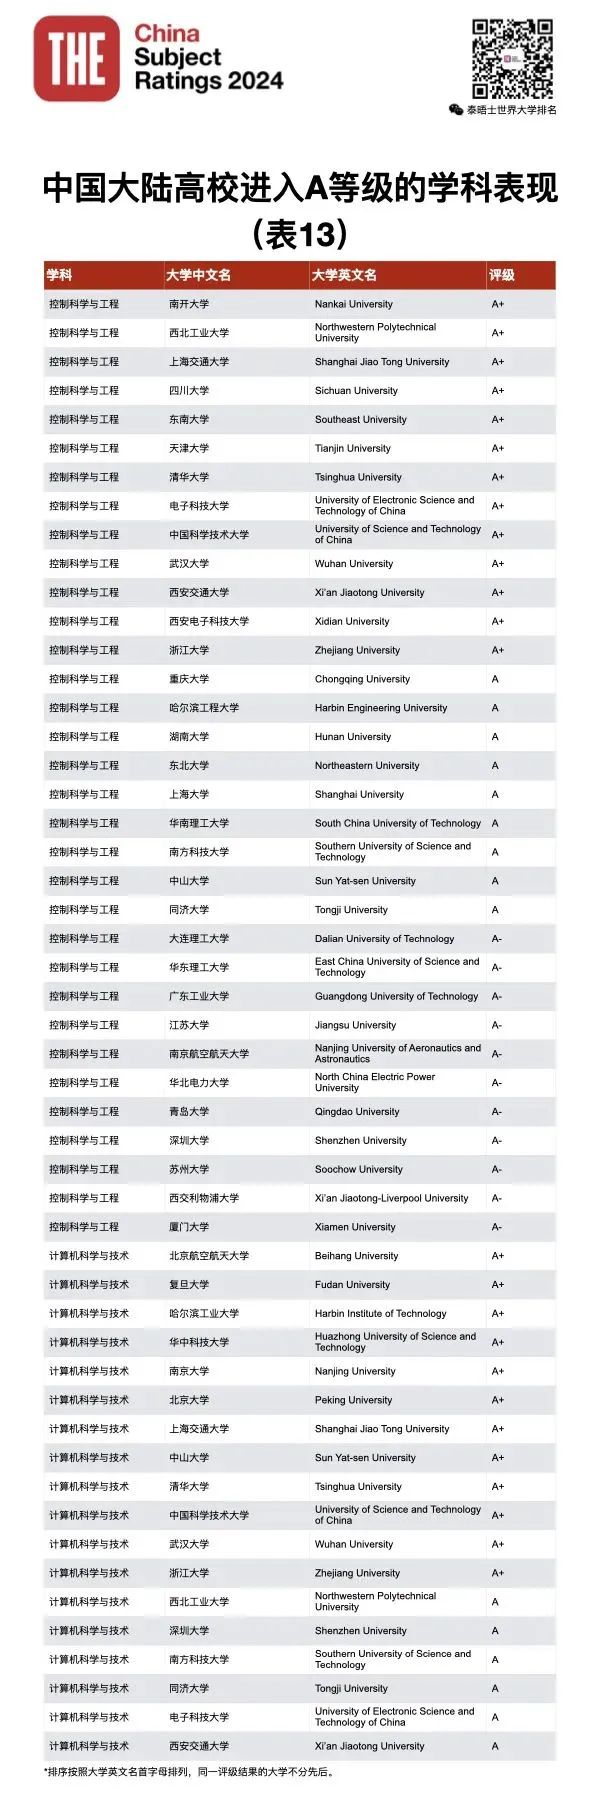 泰晤士高等教育THE发布2024年中国学科评级！你的母校努力了吗？